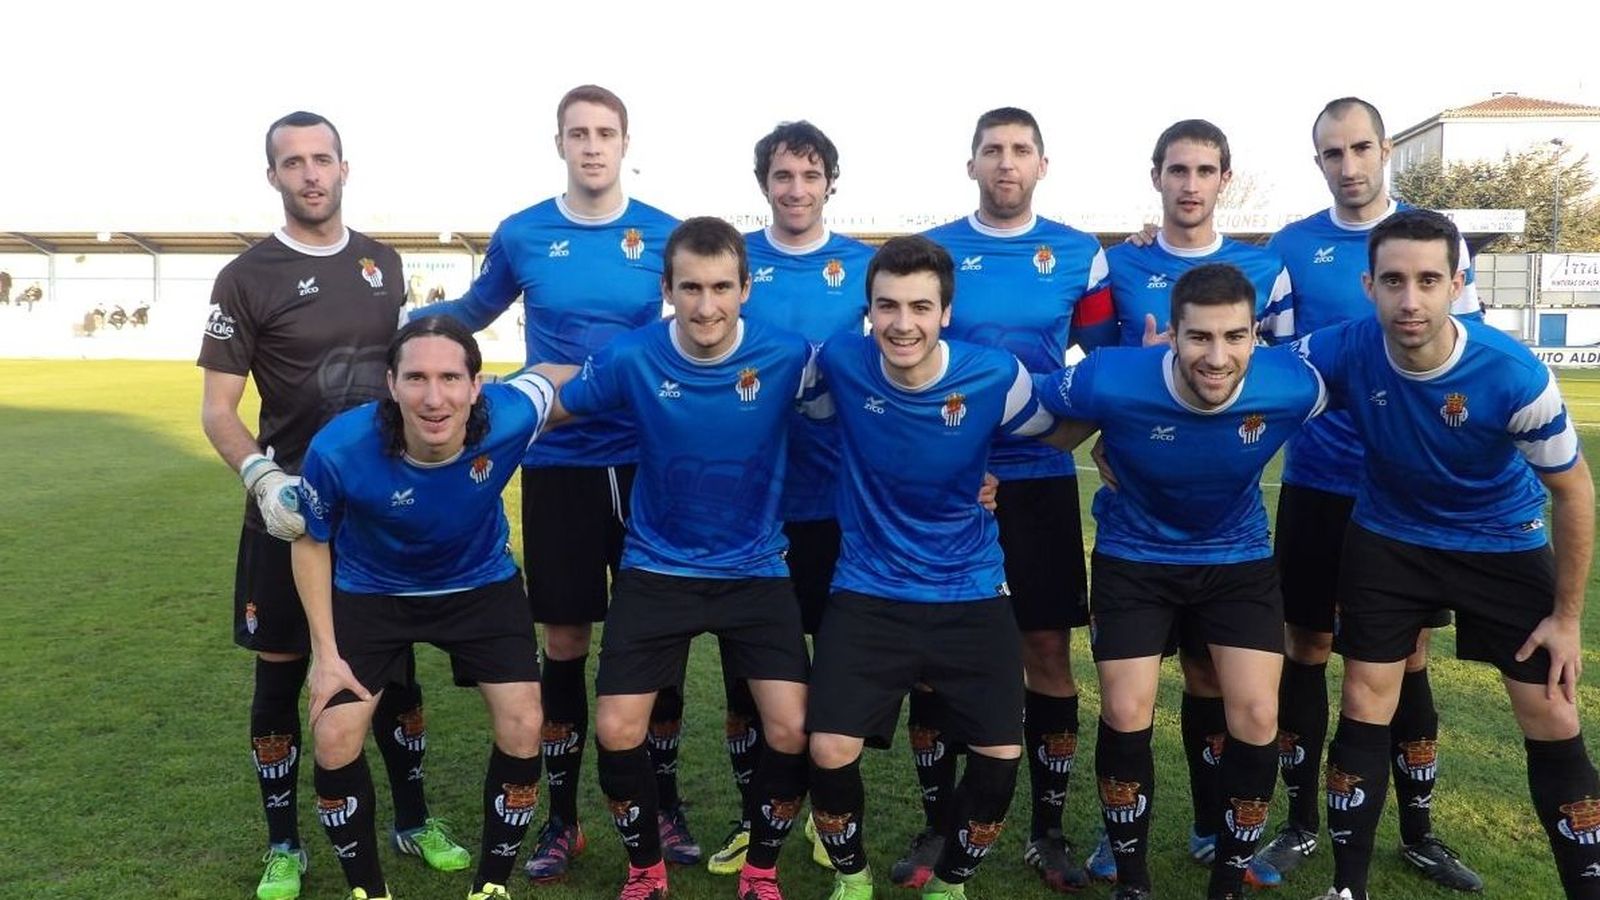 Foto: Los jugadores de la Peña Sport de Tafalla posan en el césped (Peñasport.es)